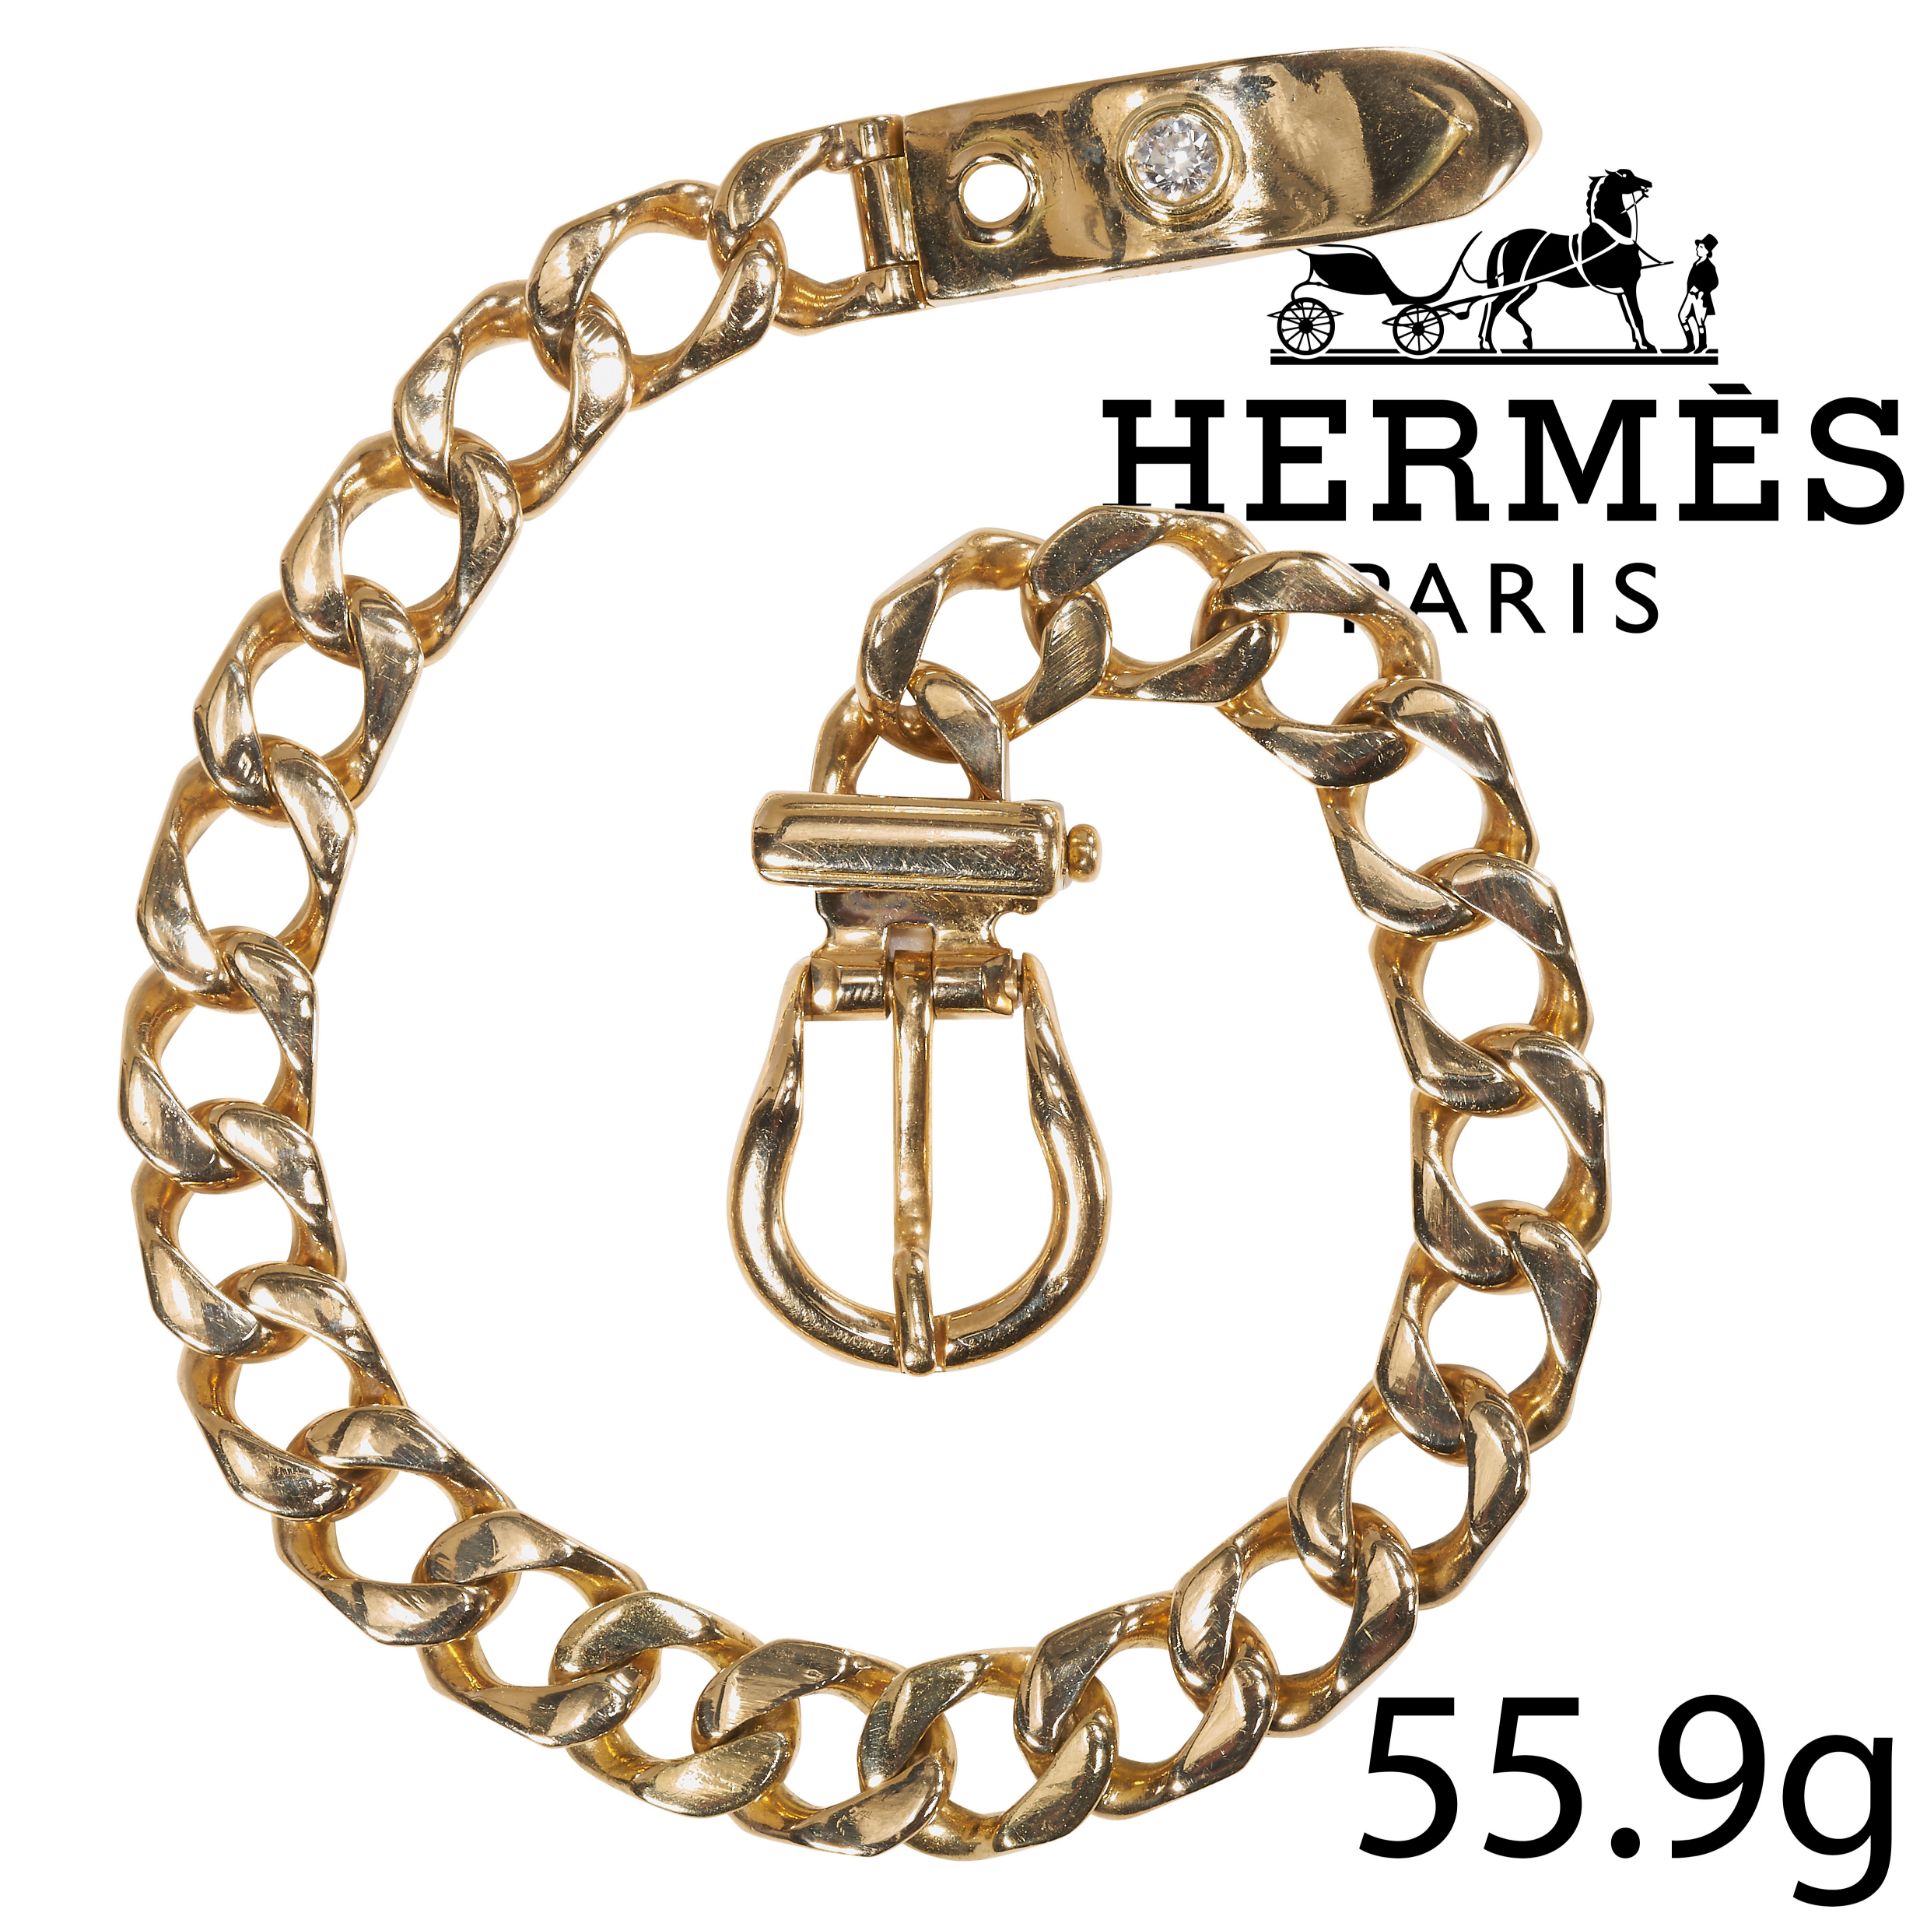 HERMES PARIS, FINE 'BOUCLE SELLIER' DIAMOND BRACELET